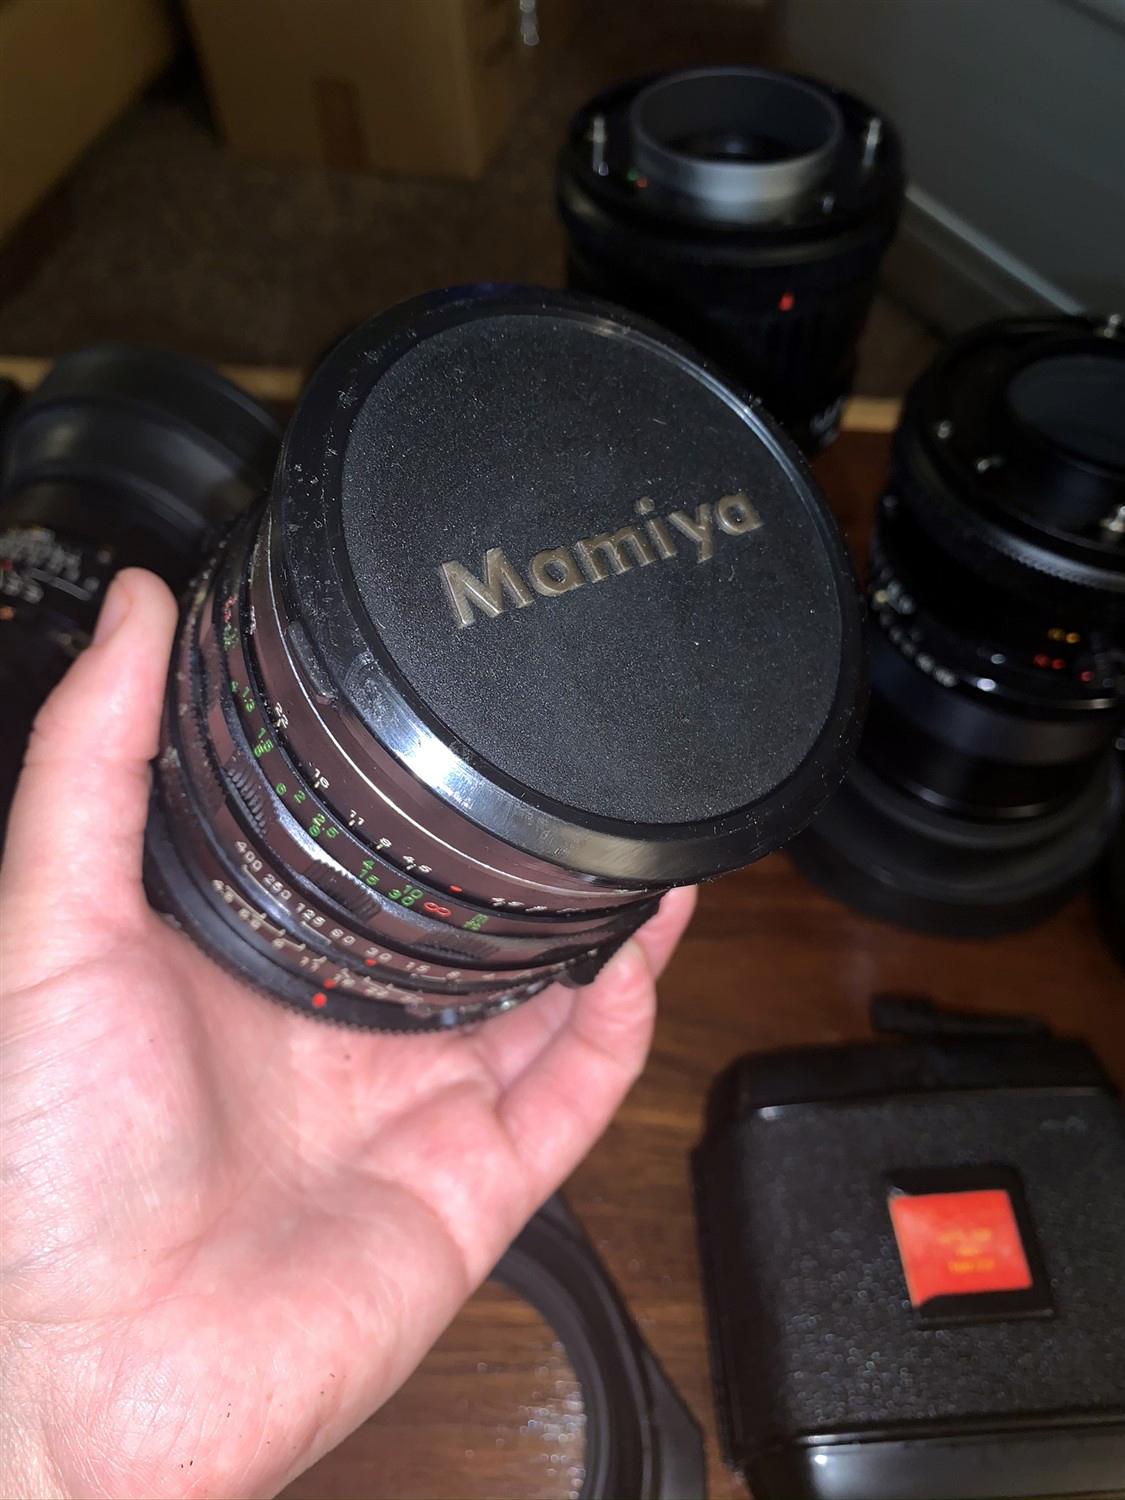 Mamiya  RB67 Camera 3 Mamiya  Lenses and Numerous Accessories